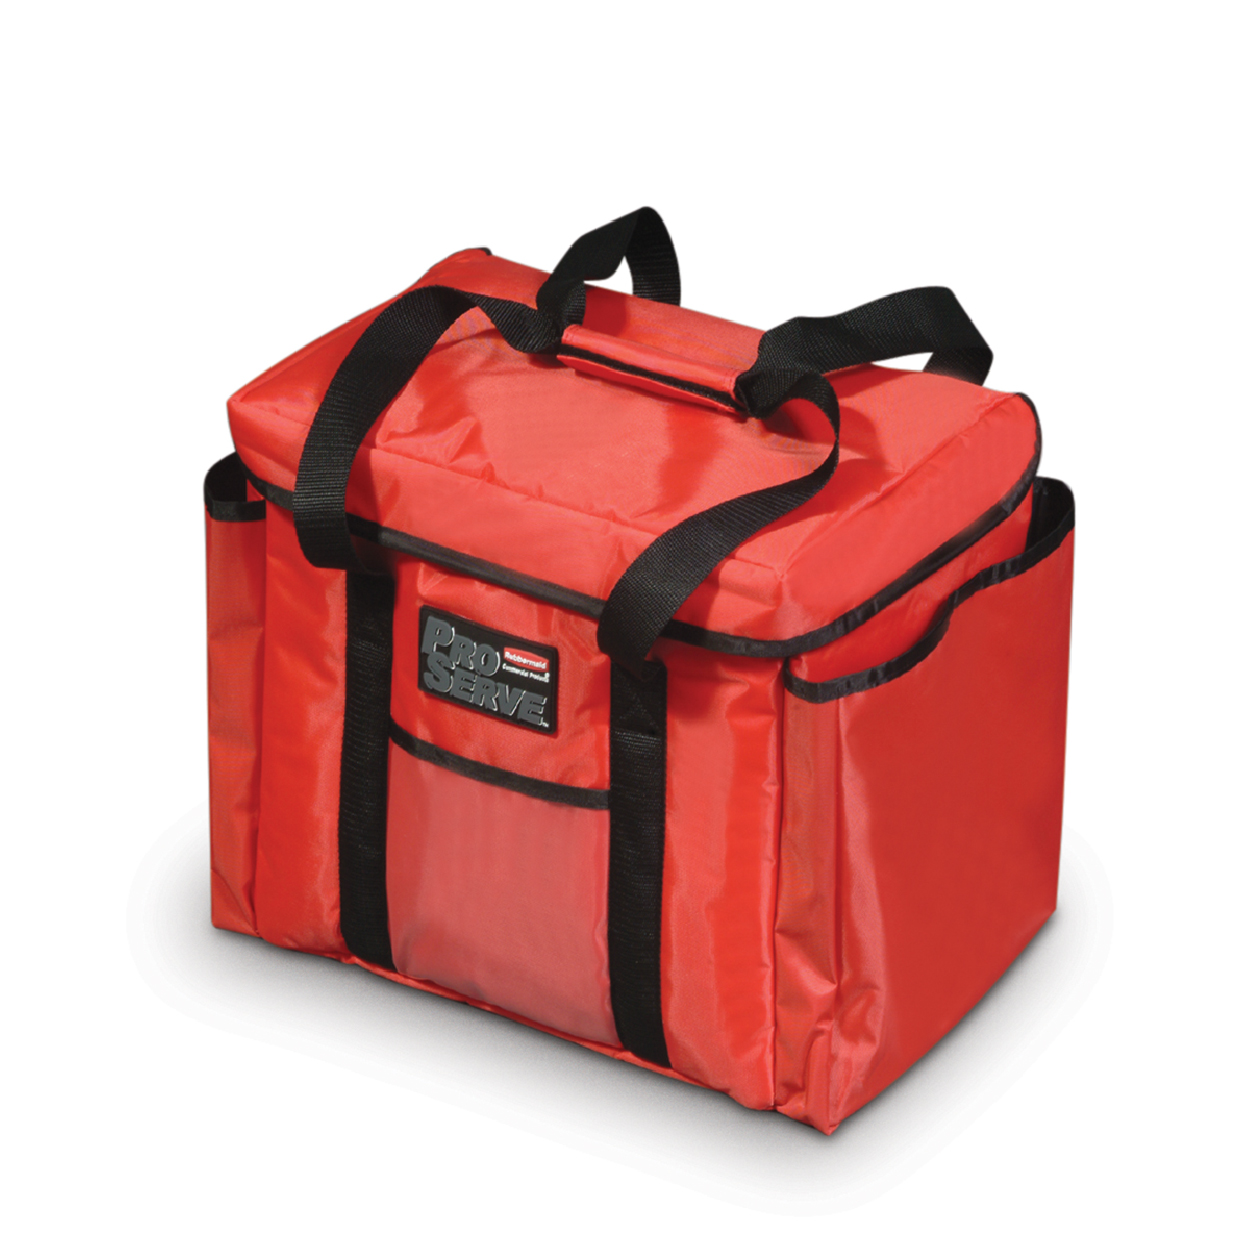 กระเป๋าส่งอาหาร Delivery แบบเปิดด้านบน สีแดง